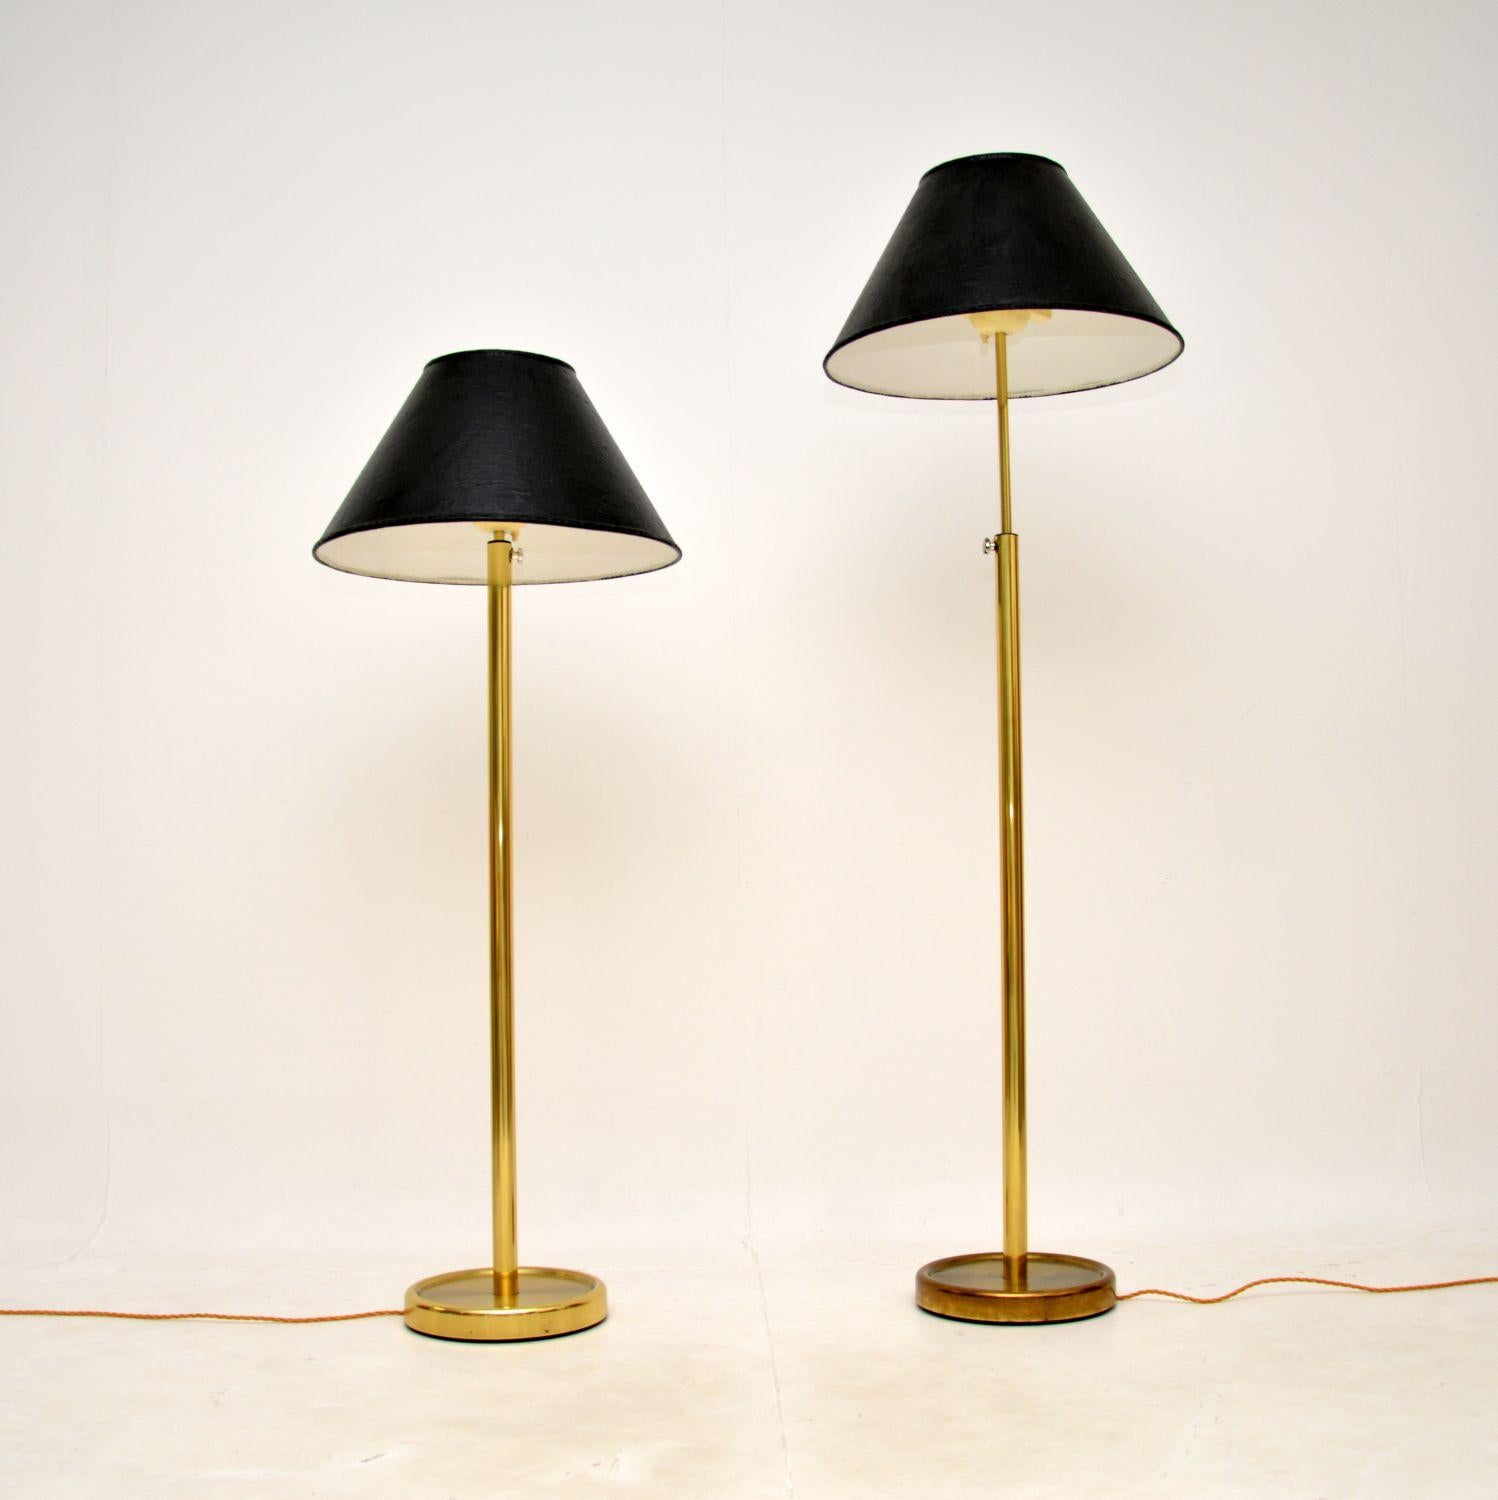 Ein stilvolles und sehr gut gemachtes Paar schwedischer Vintage-Stehlampen aus Messing. Sie wurden von Fagerhult in den 1970-80er Jahren hergestellt und kürzlich aus Schweden importiert.

Die Qualität ist fantastisch und der Zustand ist für ihr